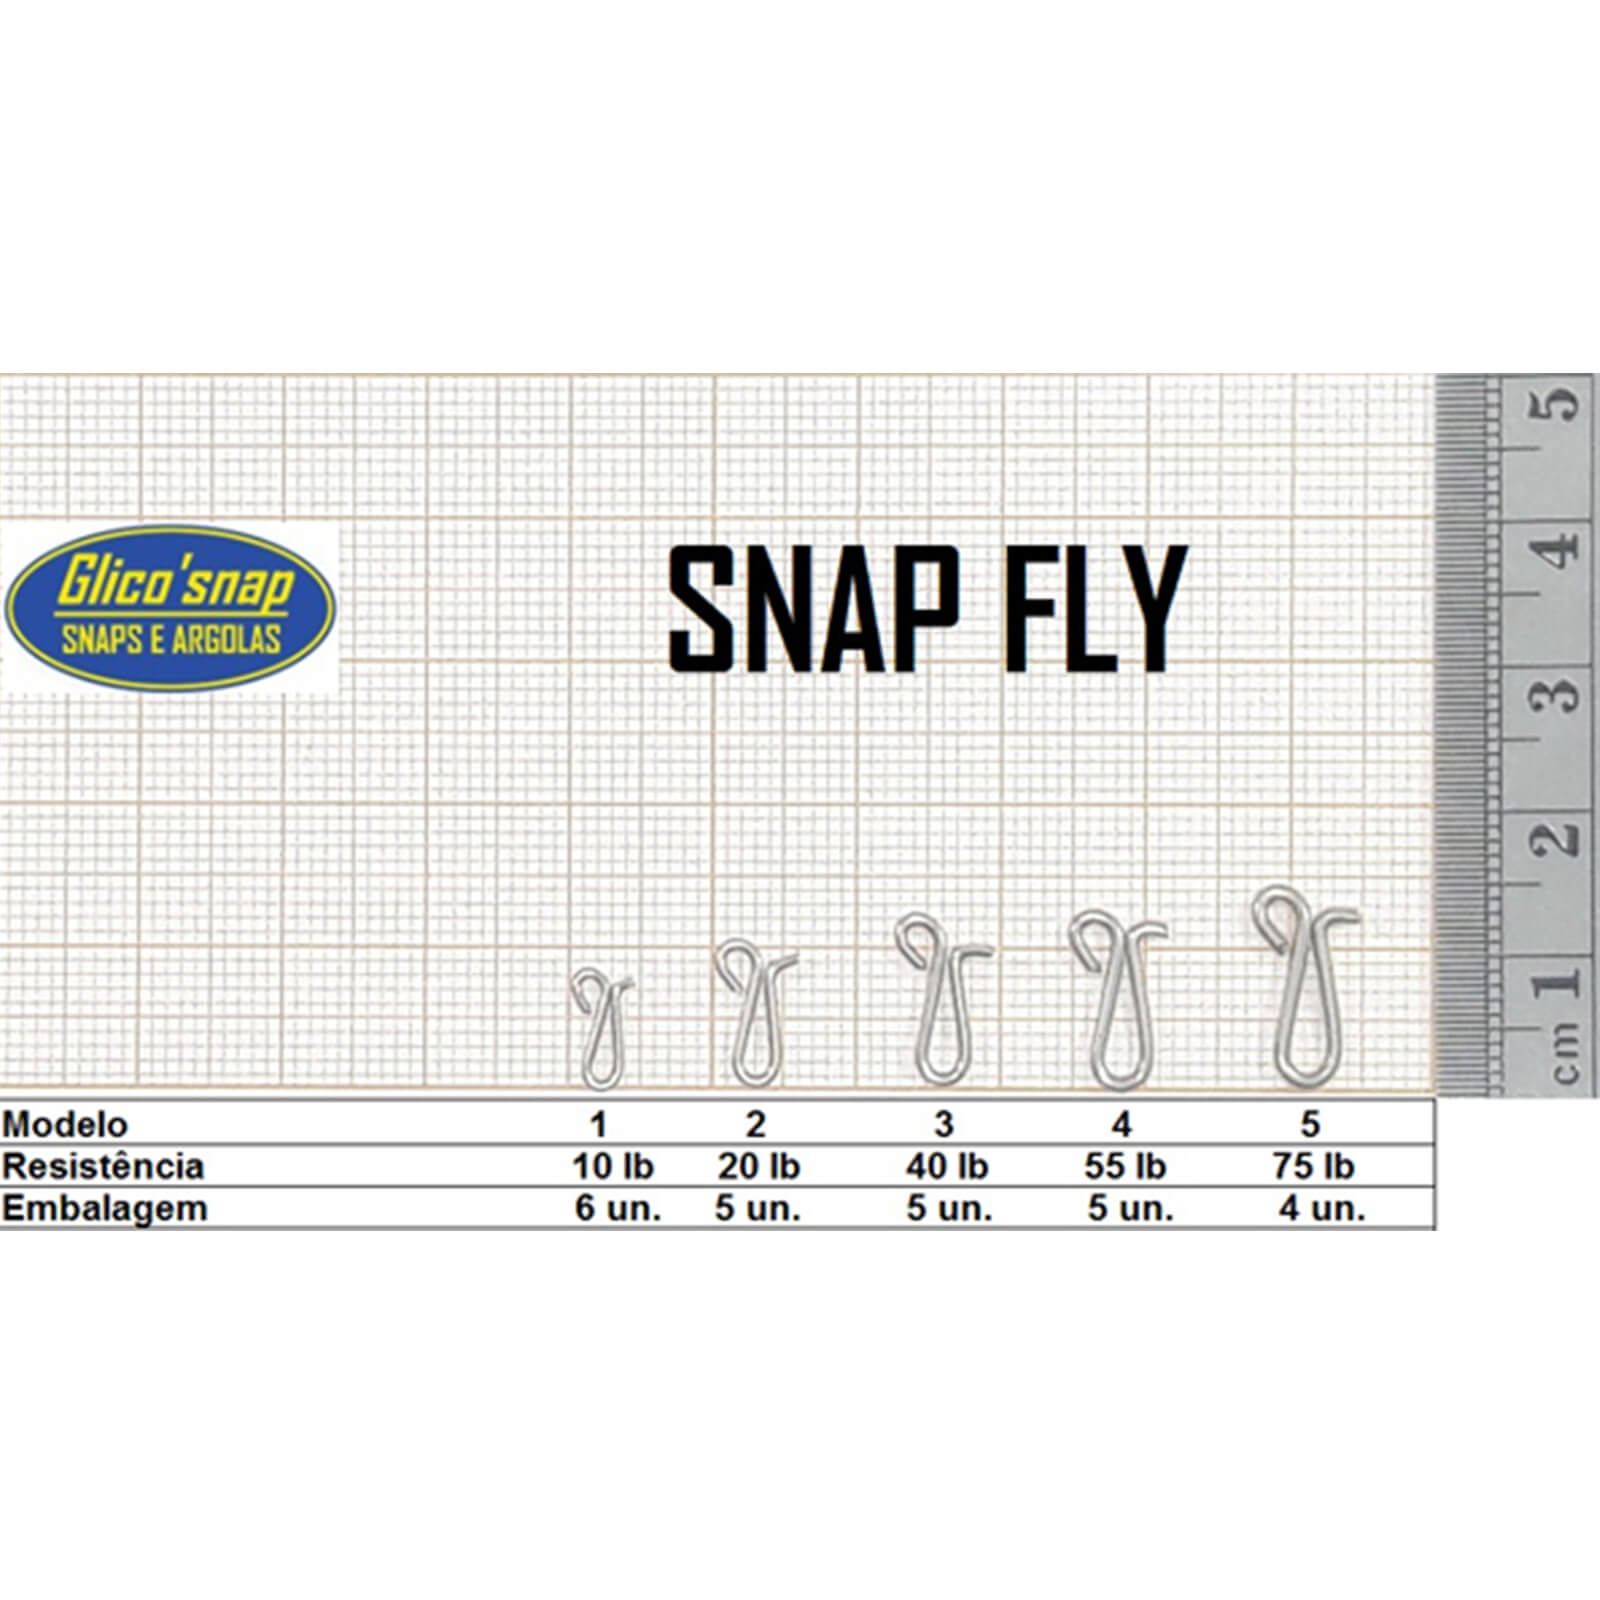 Snap Fly Mod 5 c/Girador 75lb 4un Glico' Snap